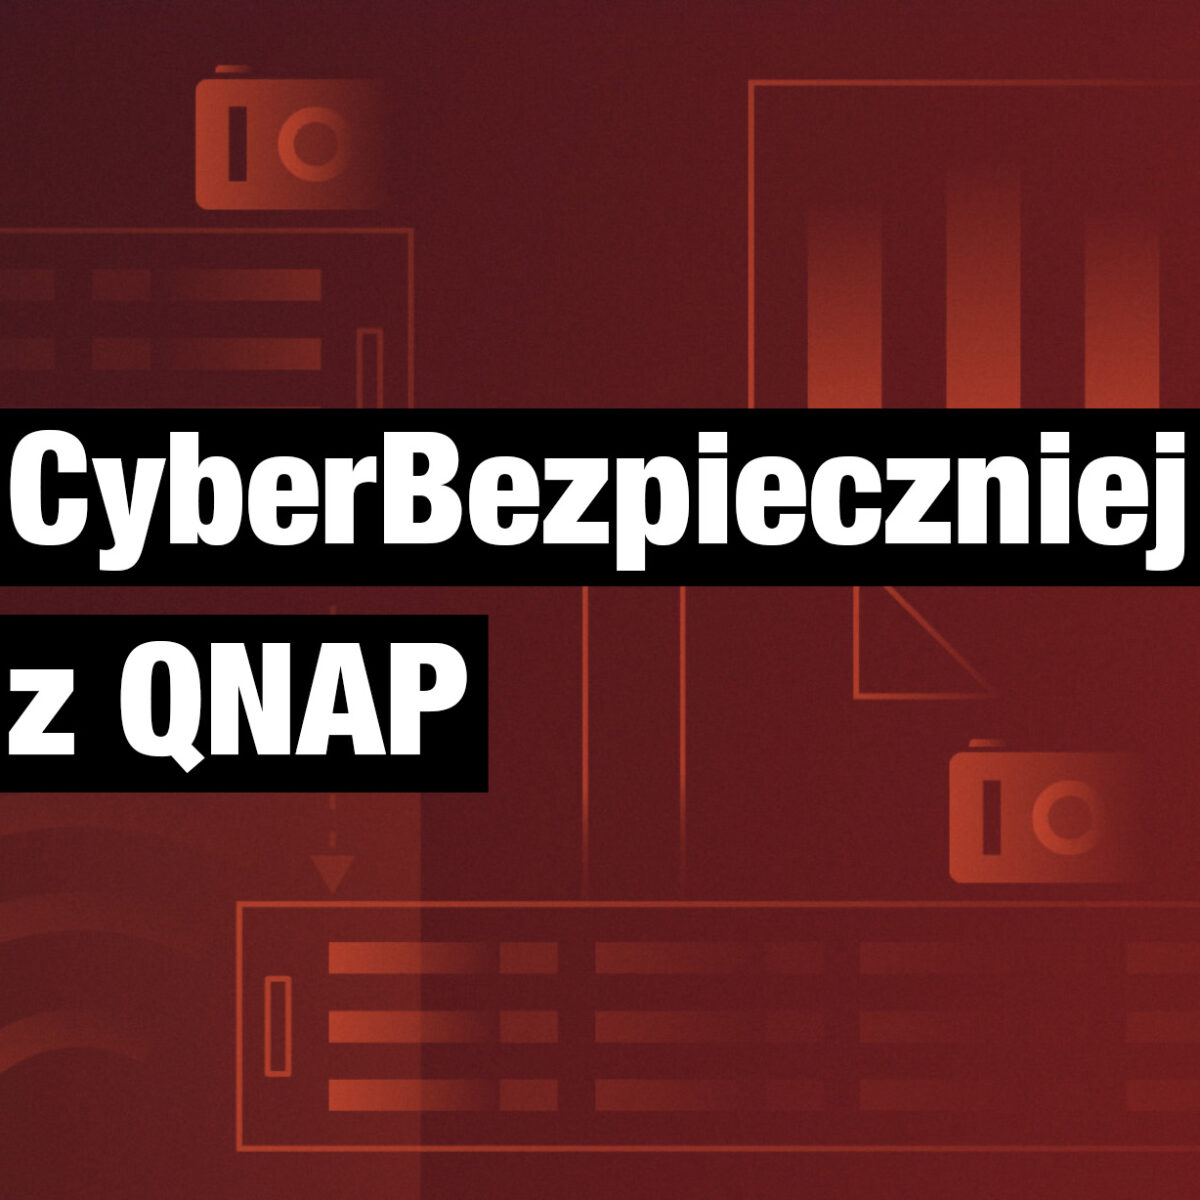 CyberBezpieczniej z QNAP